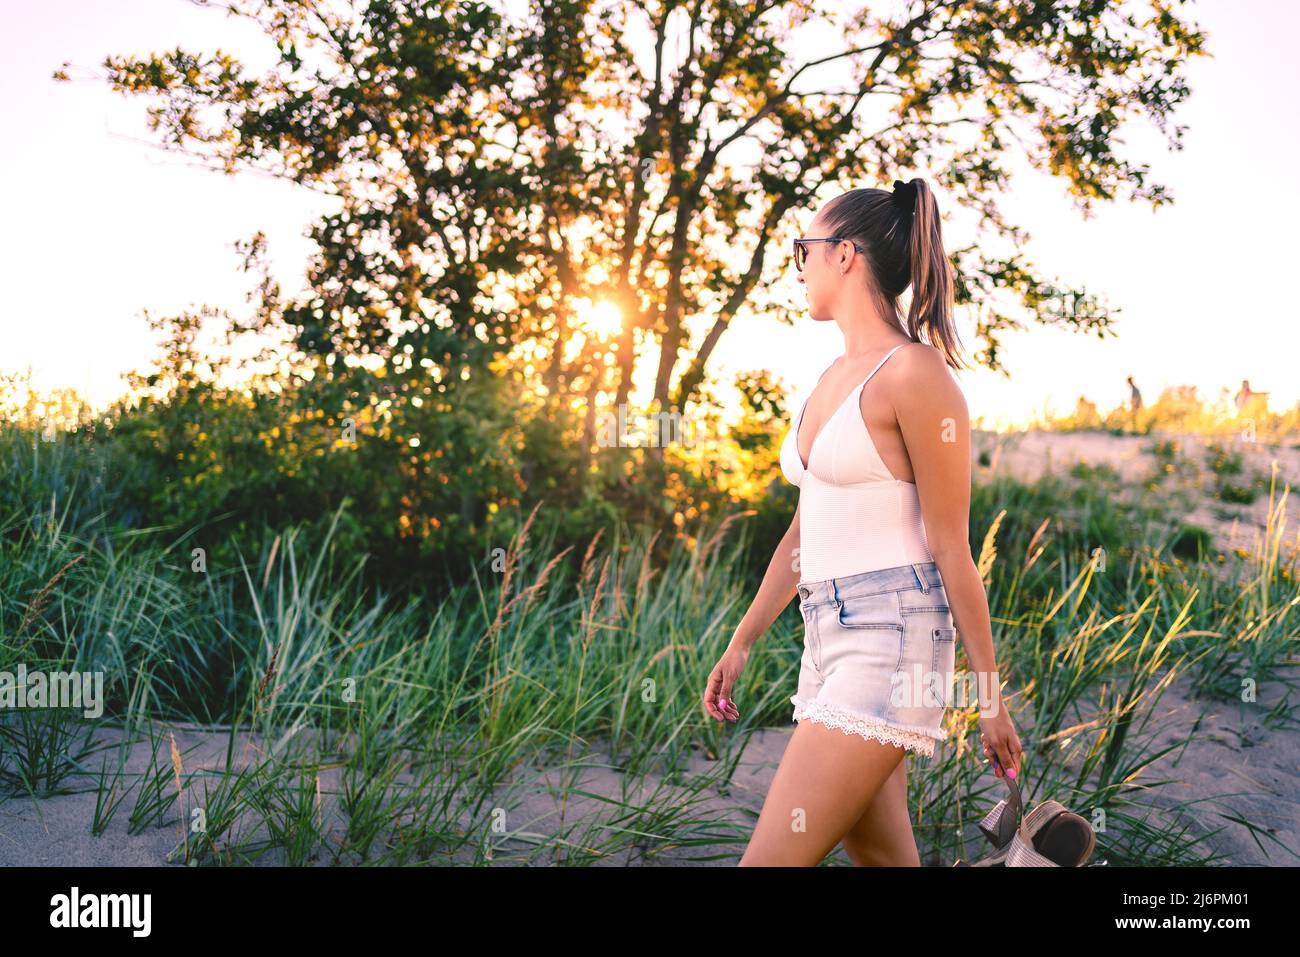 Sommerabend Spaziergang im Feld von Bäumen und Sanddünen bei Sonnenuntergang. Frau genießt friedliche Freizeit in der Natur im Freien. Trendiges, stilvolles Urlaubsoutfit. Stockfoto